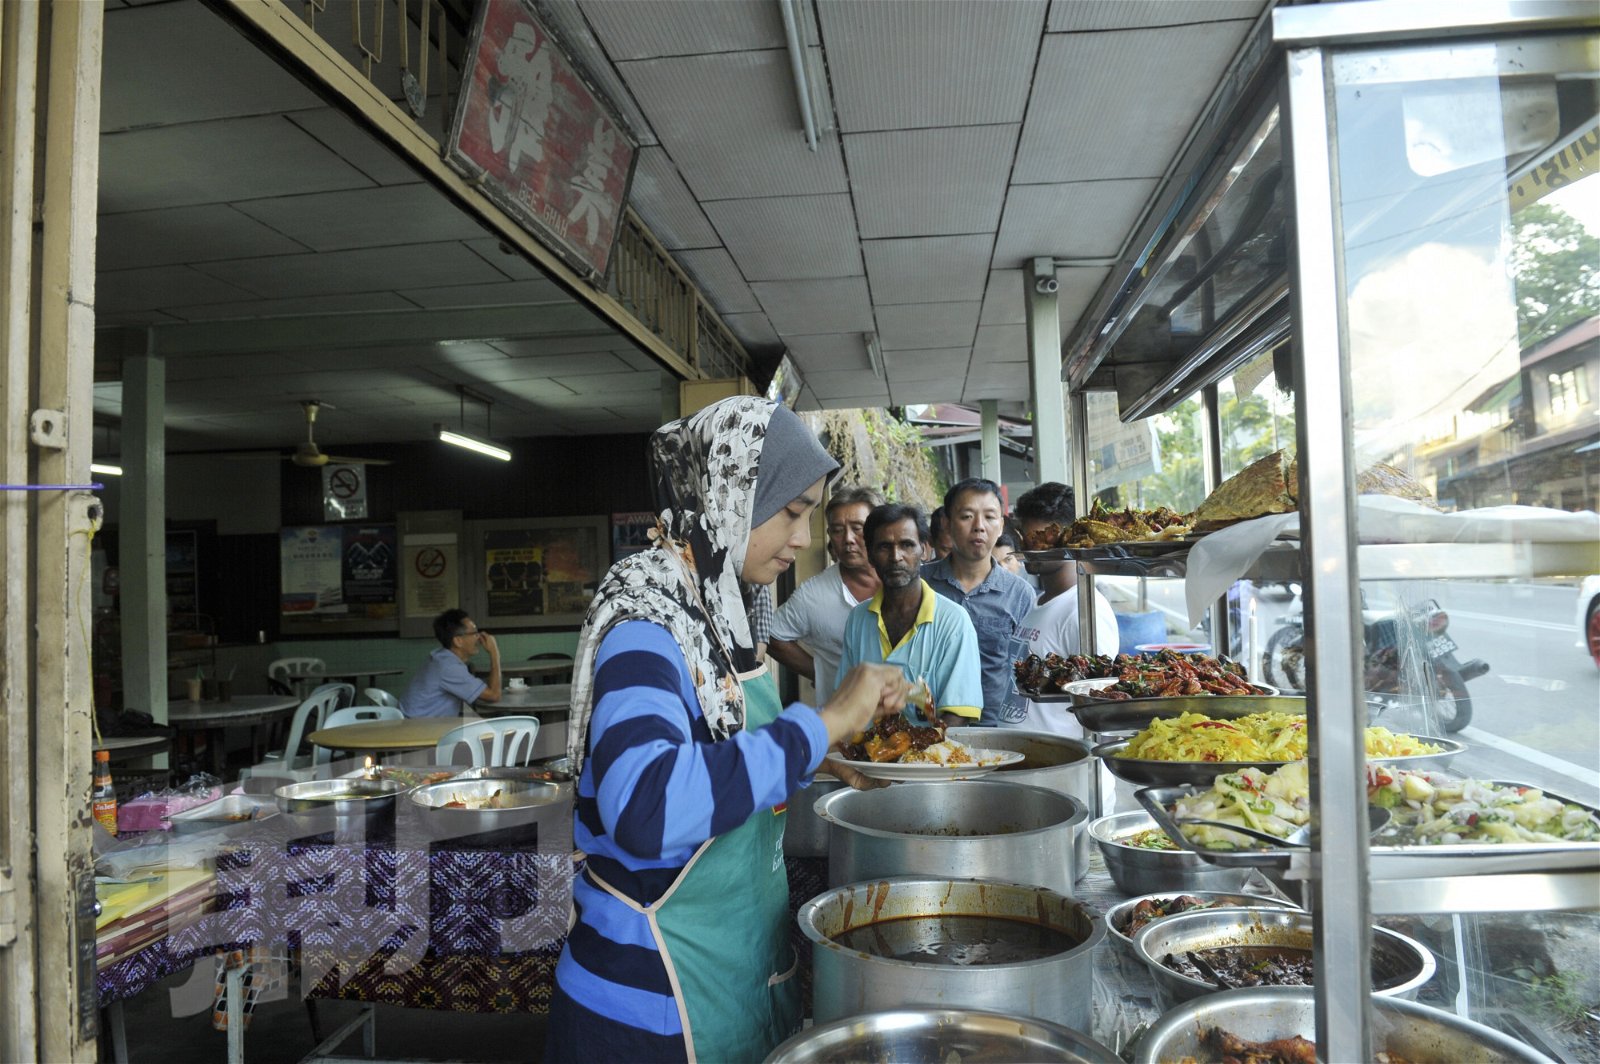 虽然传承自达勿，但娜塔拉应顾客的要求，增加了许多马来菜肴元素，成为改良版的扁担饭，并获得各族的食客追捧，还未开档做生意，就已经满满的顾客在等候。 （摄影：蔡开国）